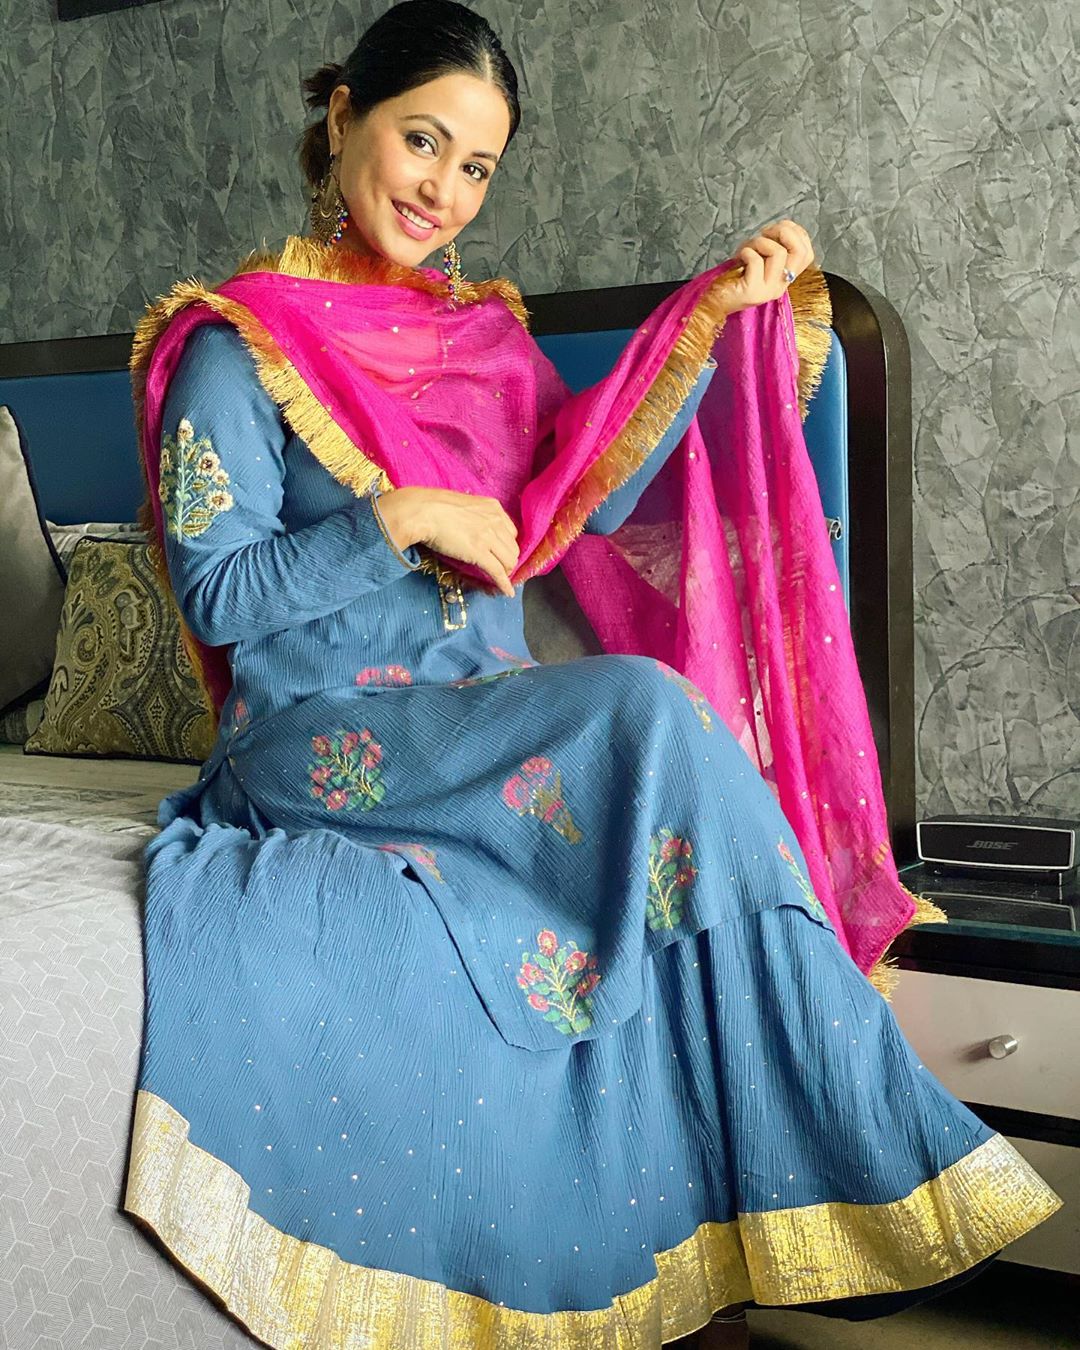 Indian TV Actress Hina Khan